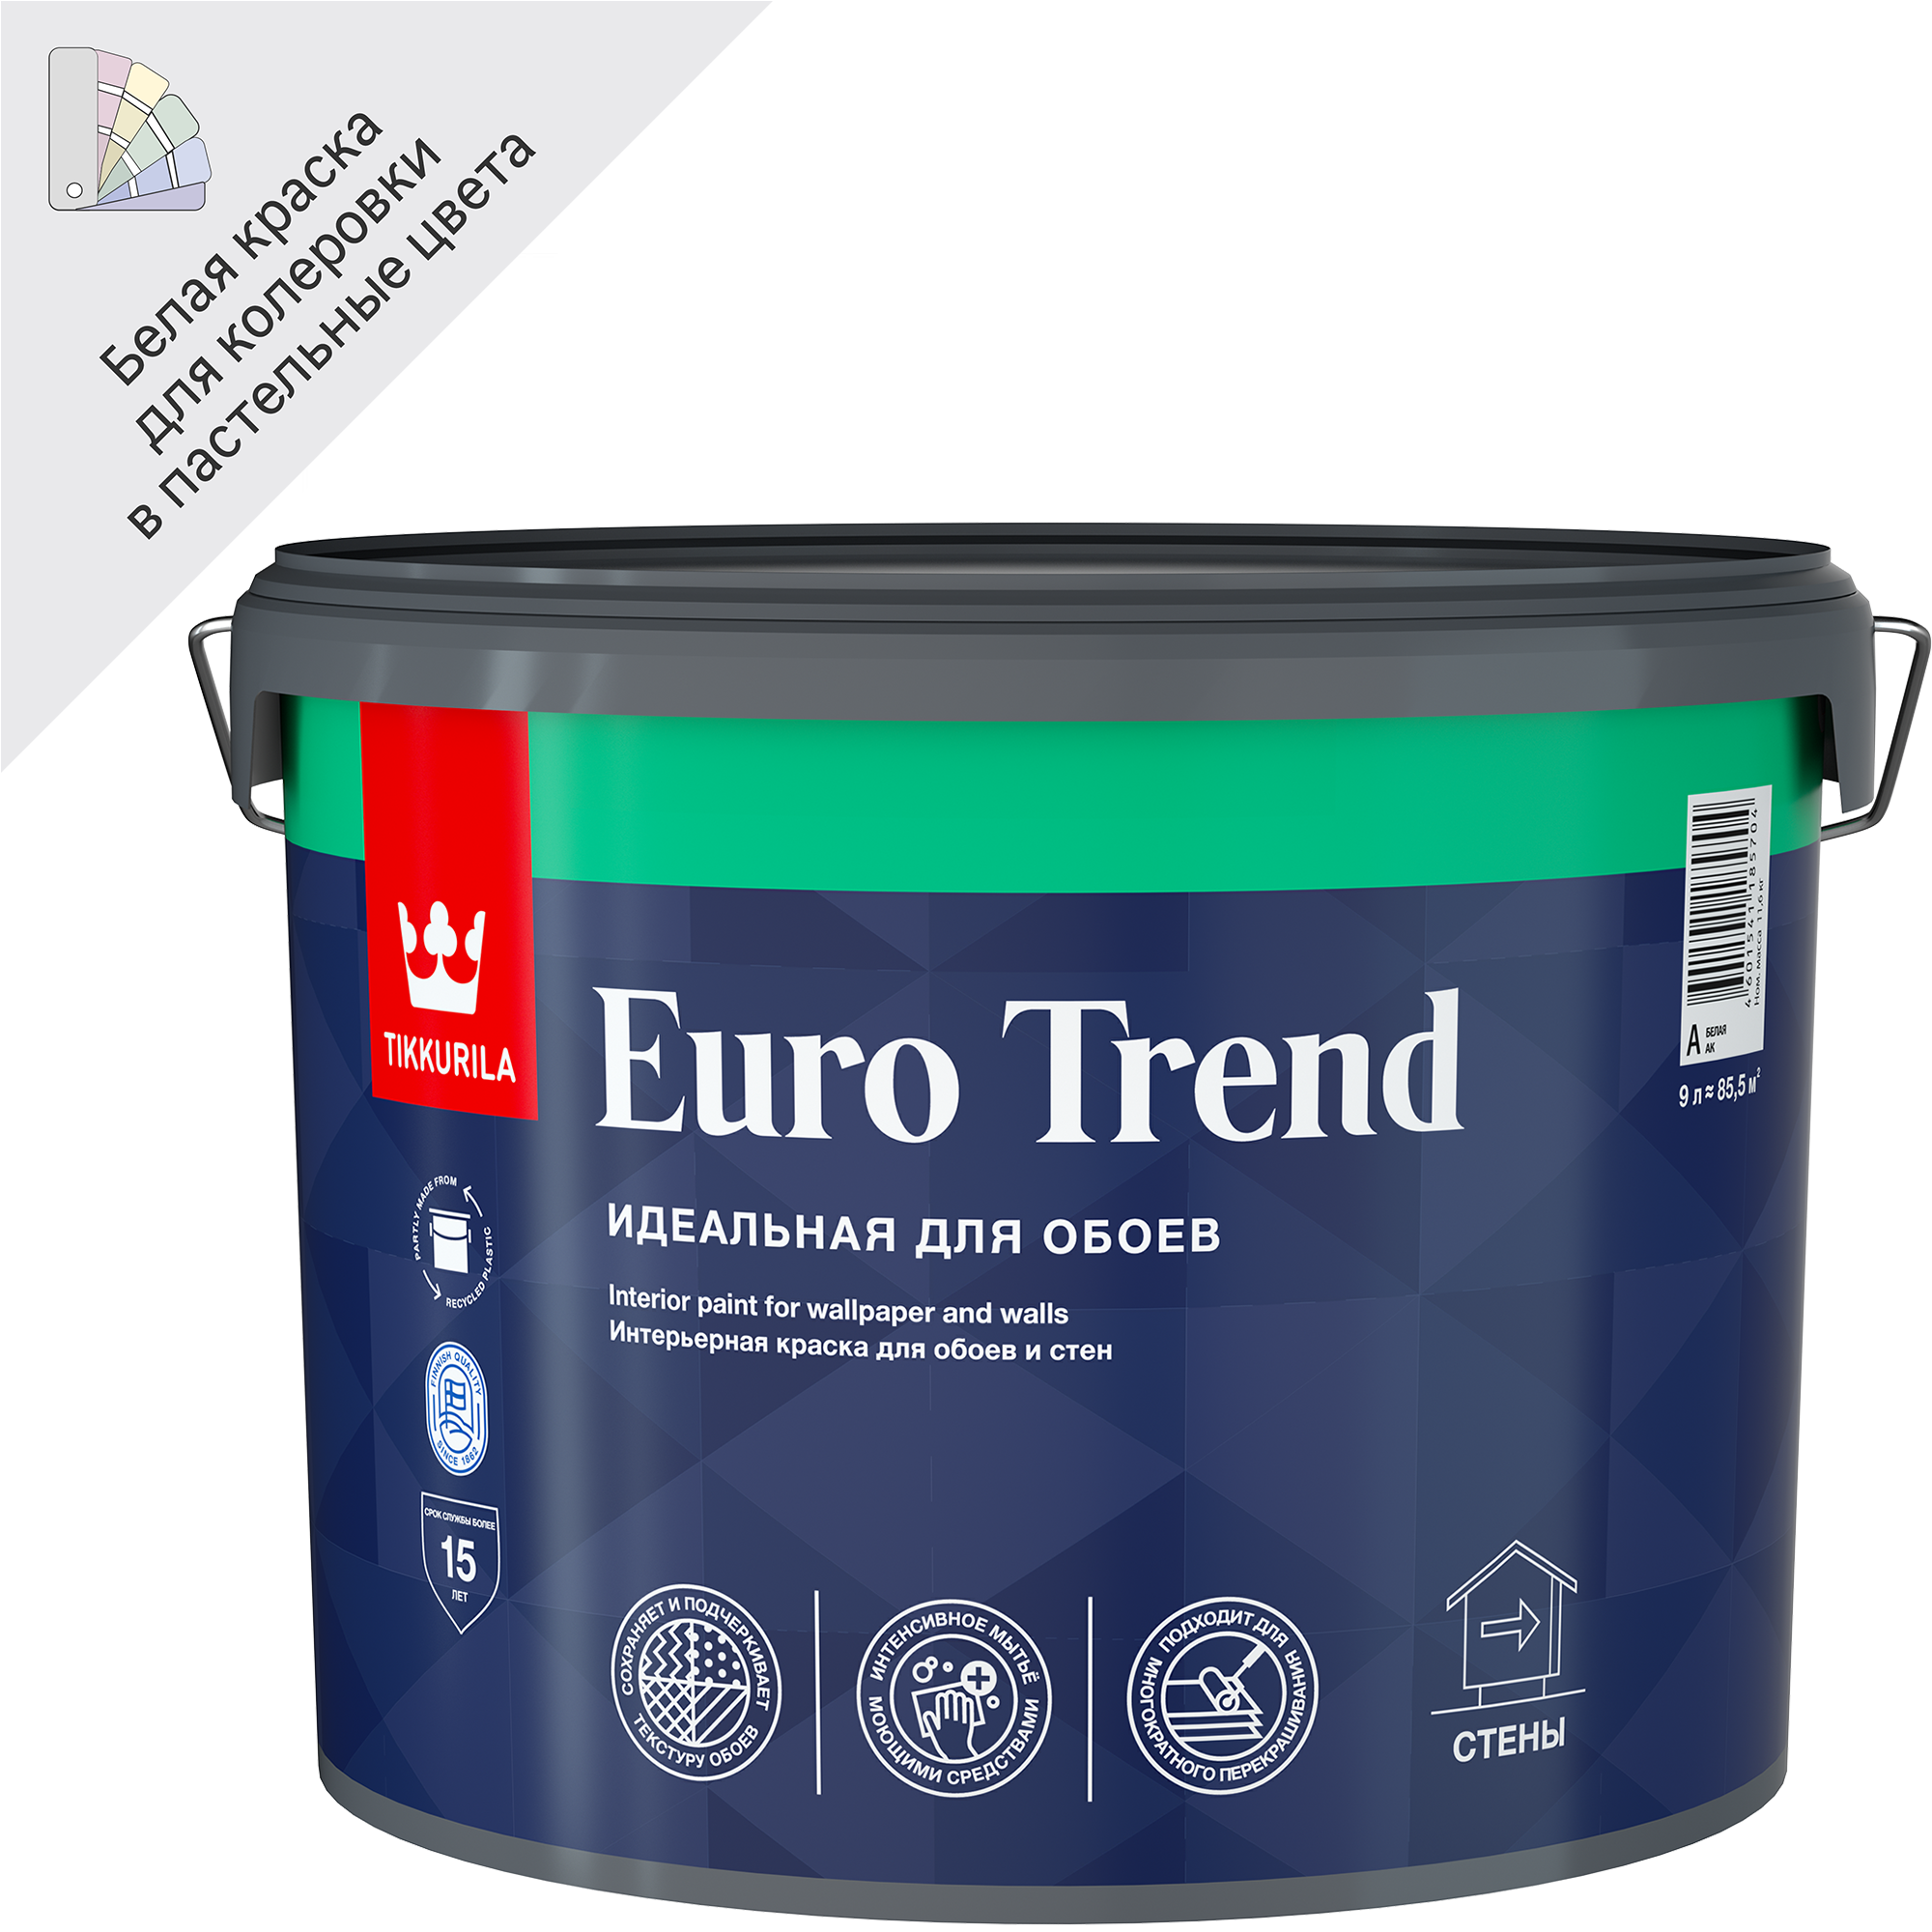 82115877 Краска интерьерная моющаяся для обоев и стен Euro Trend База A белая матовая 9 л STLM-0019451 TIKKURILA